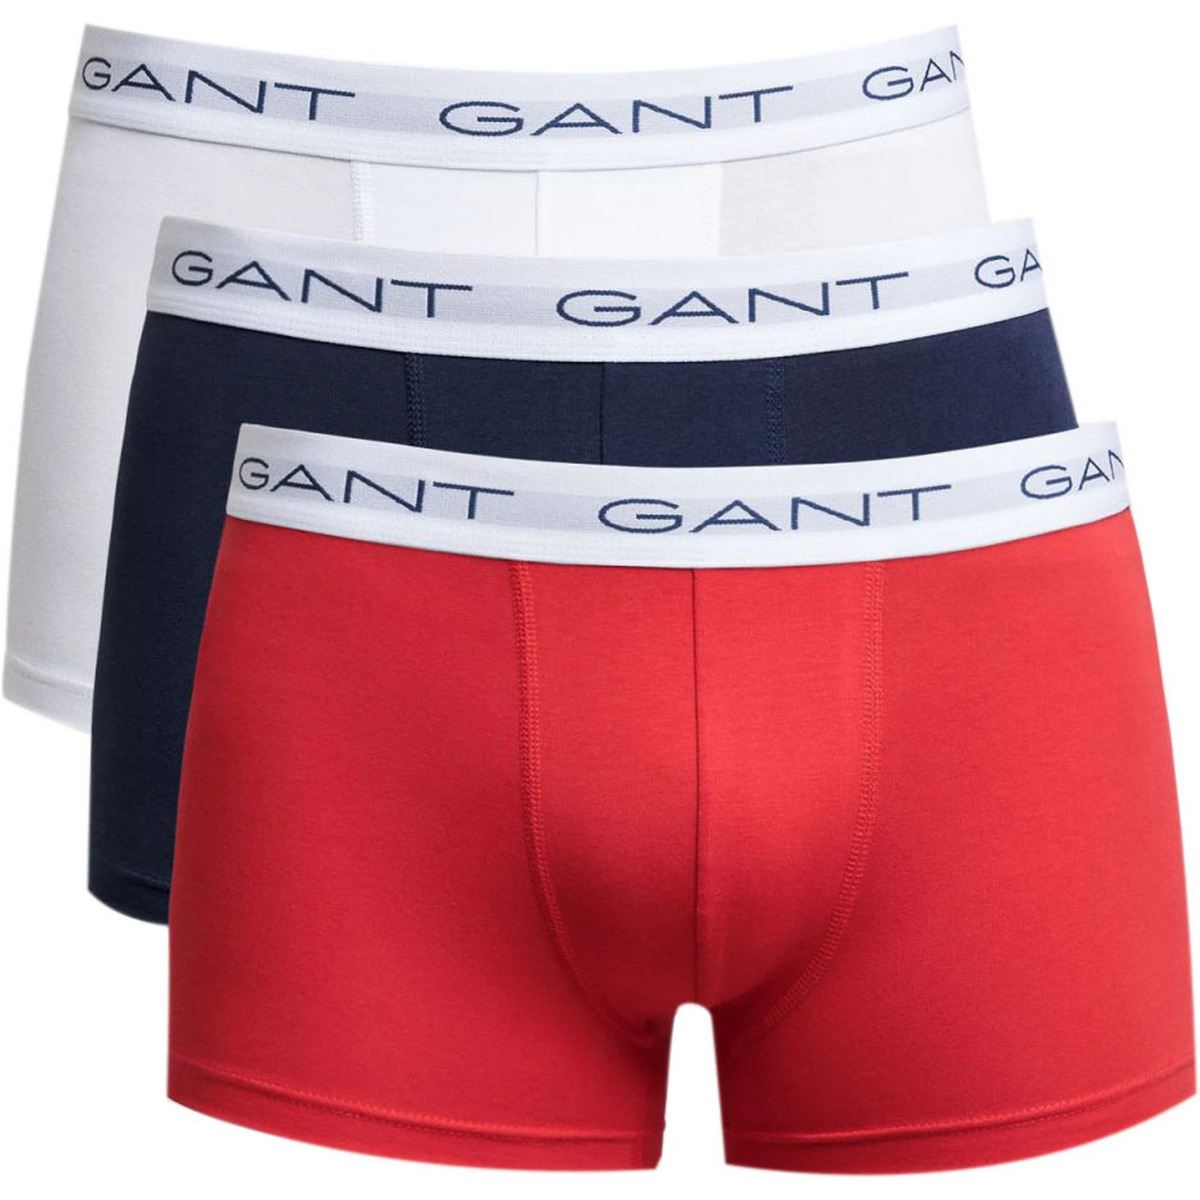 Gant Rouge Boxers Lot de 3 Multicolores KRYopK6E